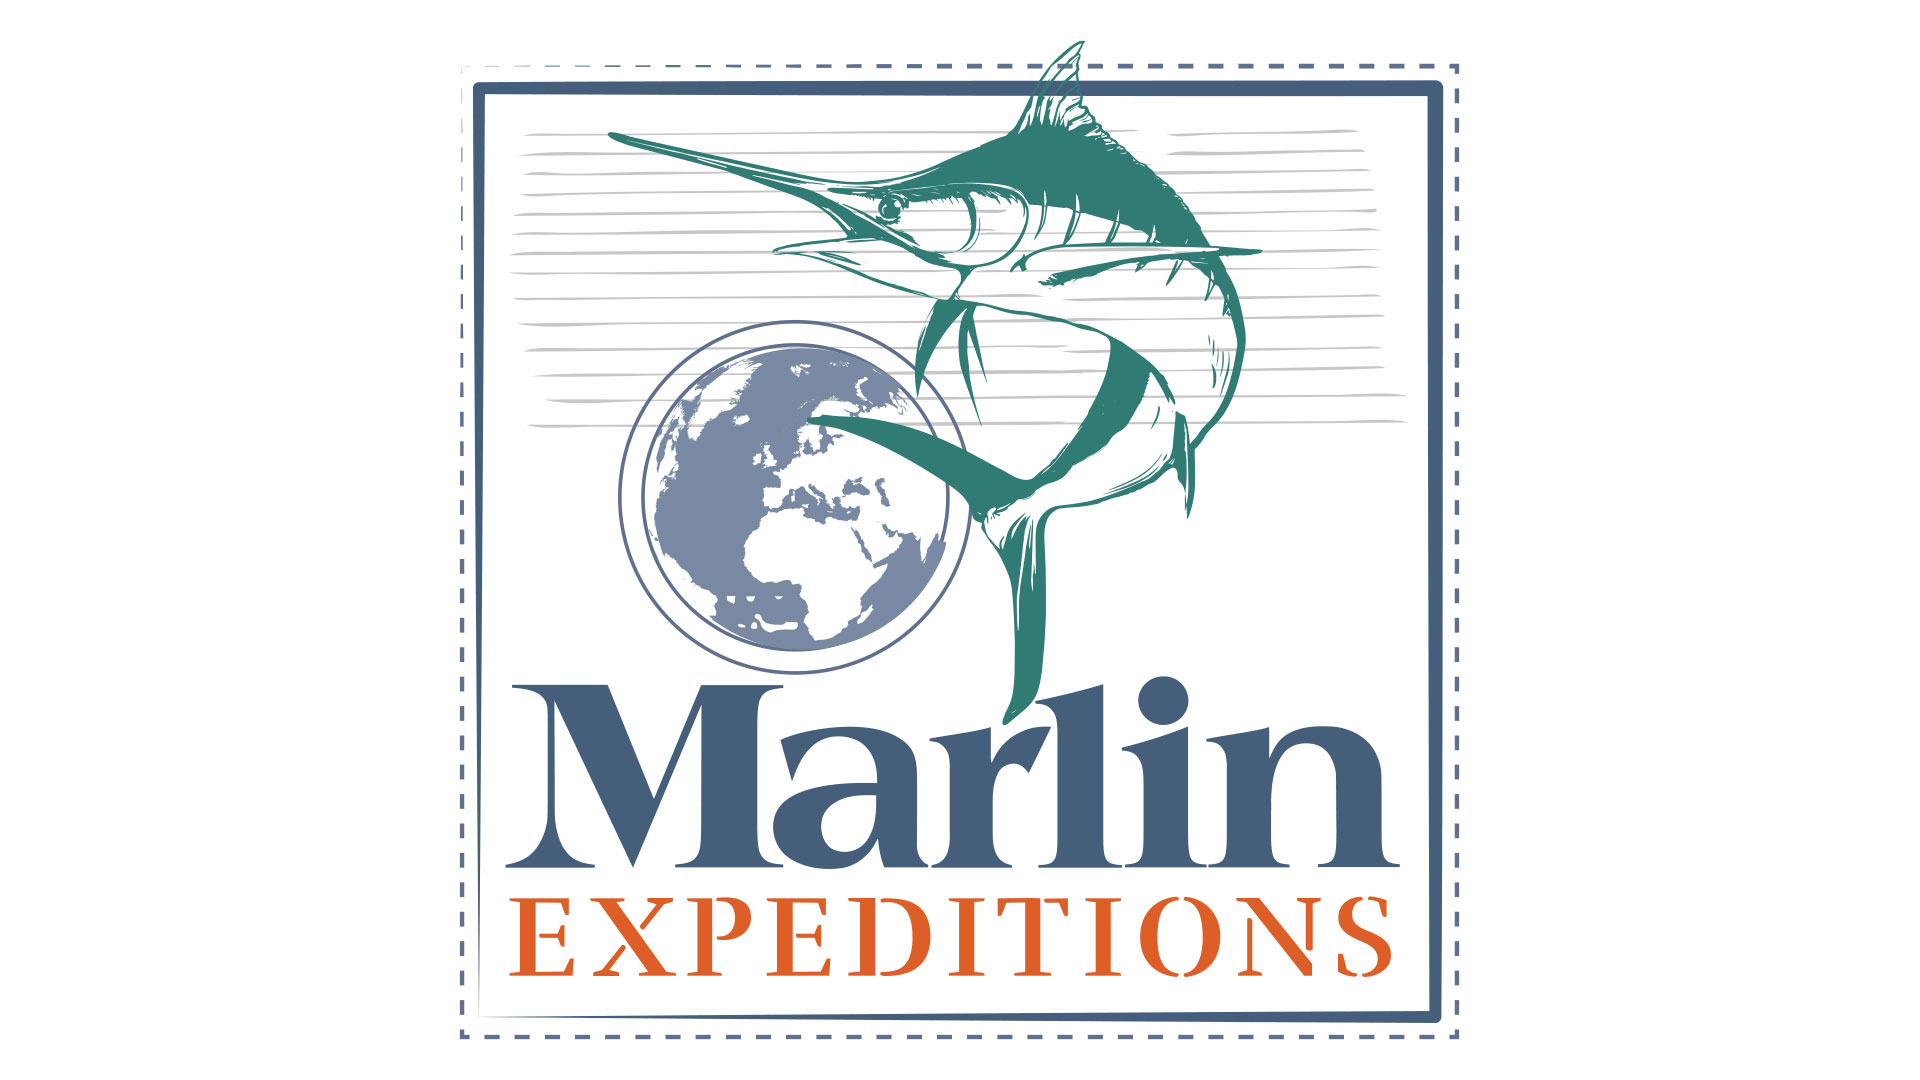 marlin travel logo